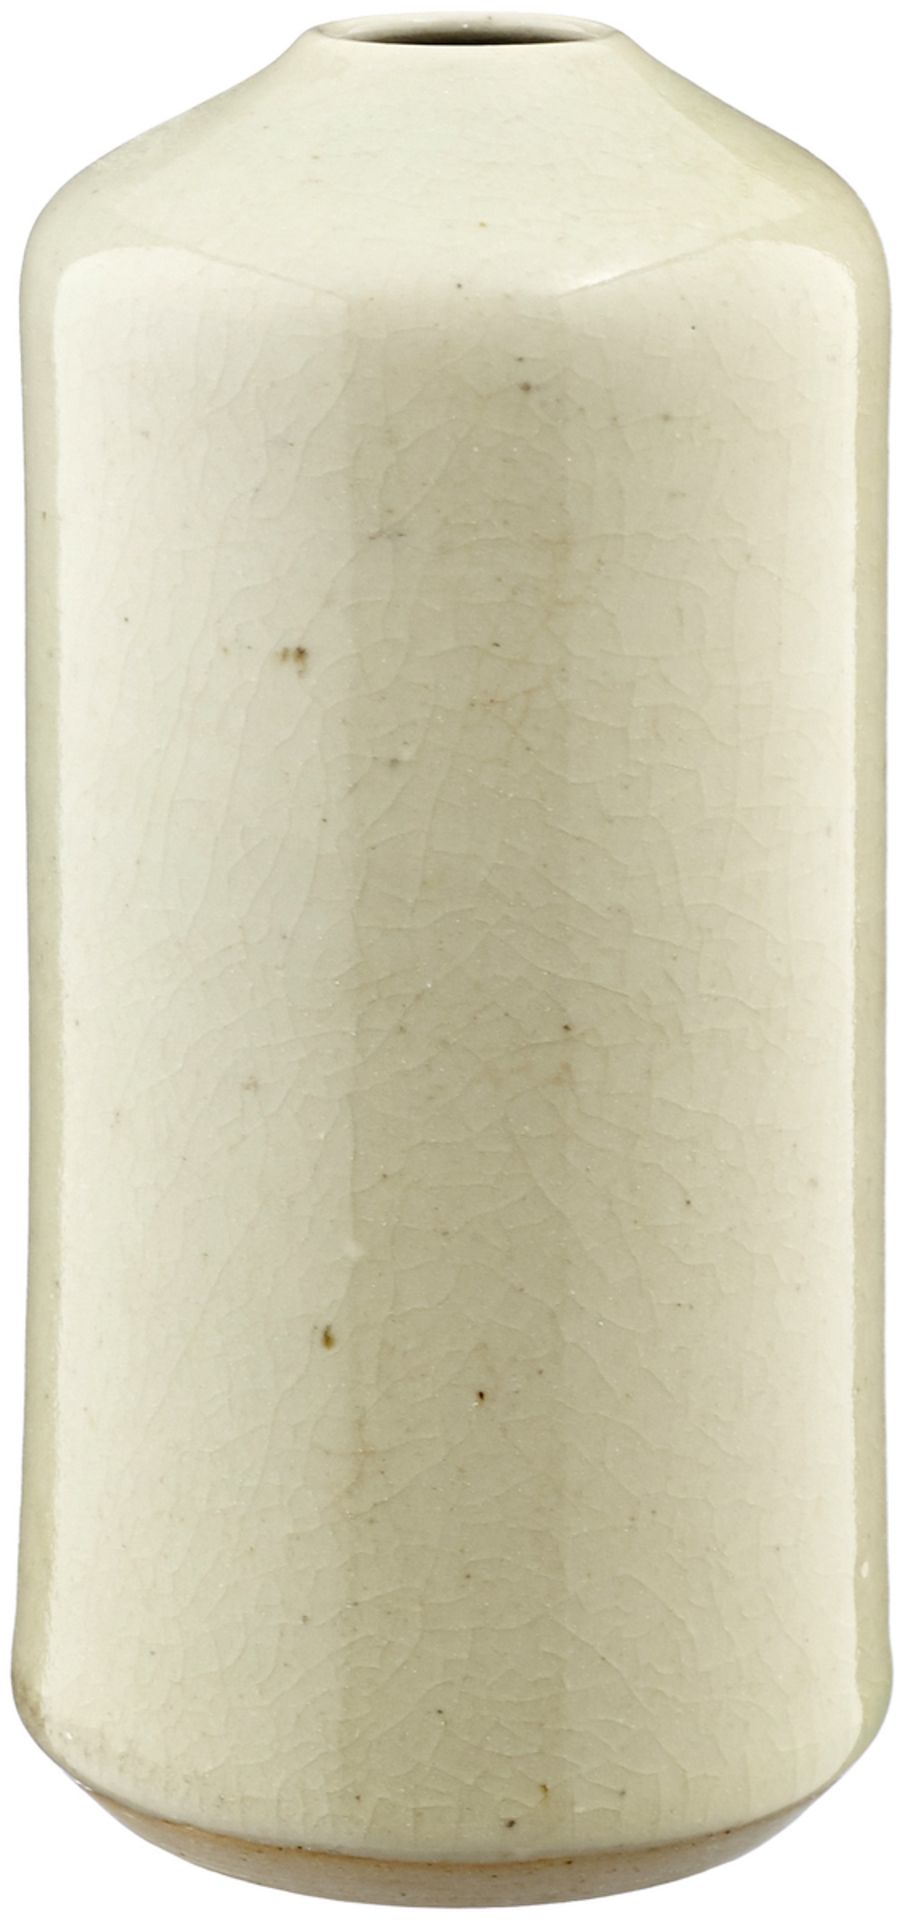 Zwei Vasen "Mario Mascarin"Mitte 20. Jh. Graue Keramikvasen mit Krakelee-Glasur. Beide im Stand - Bild 3 aus 5